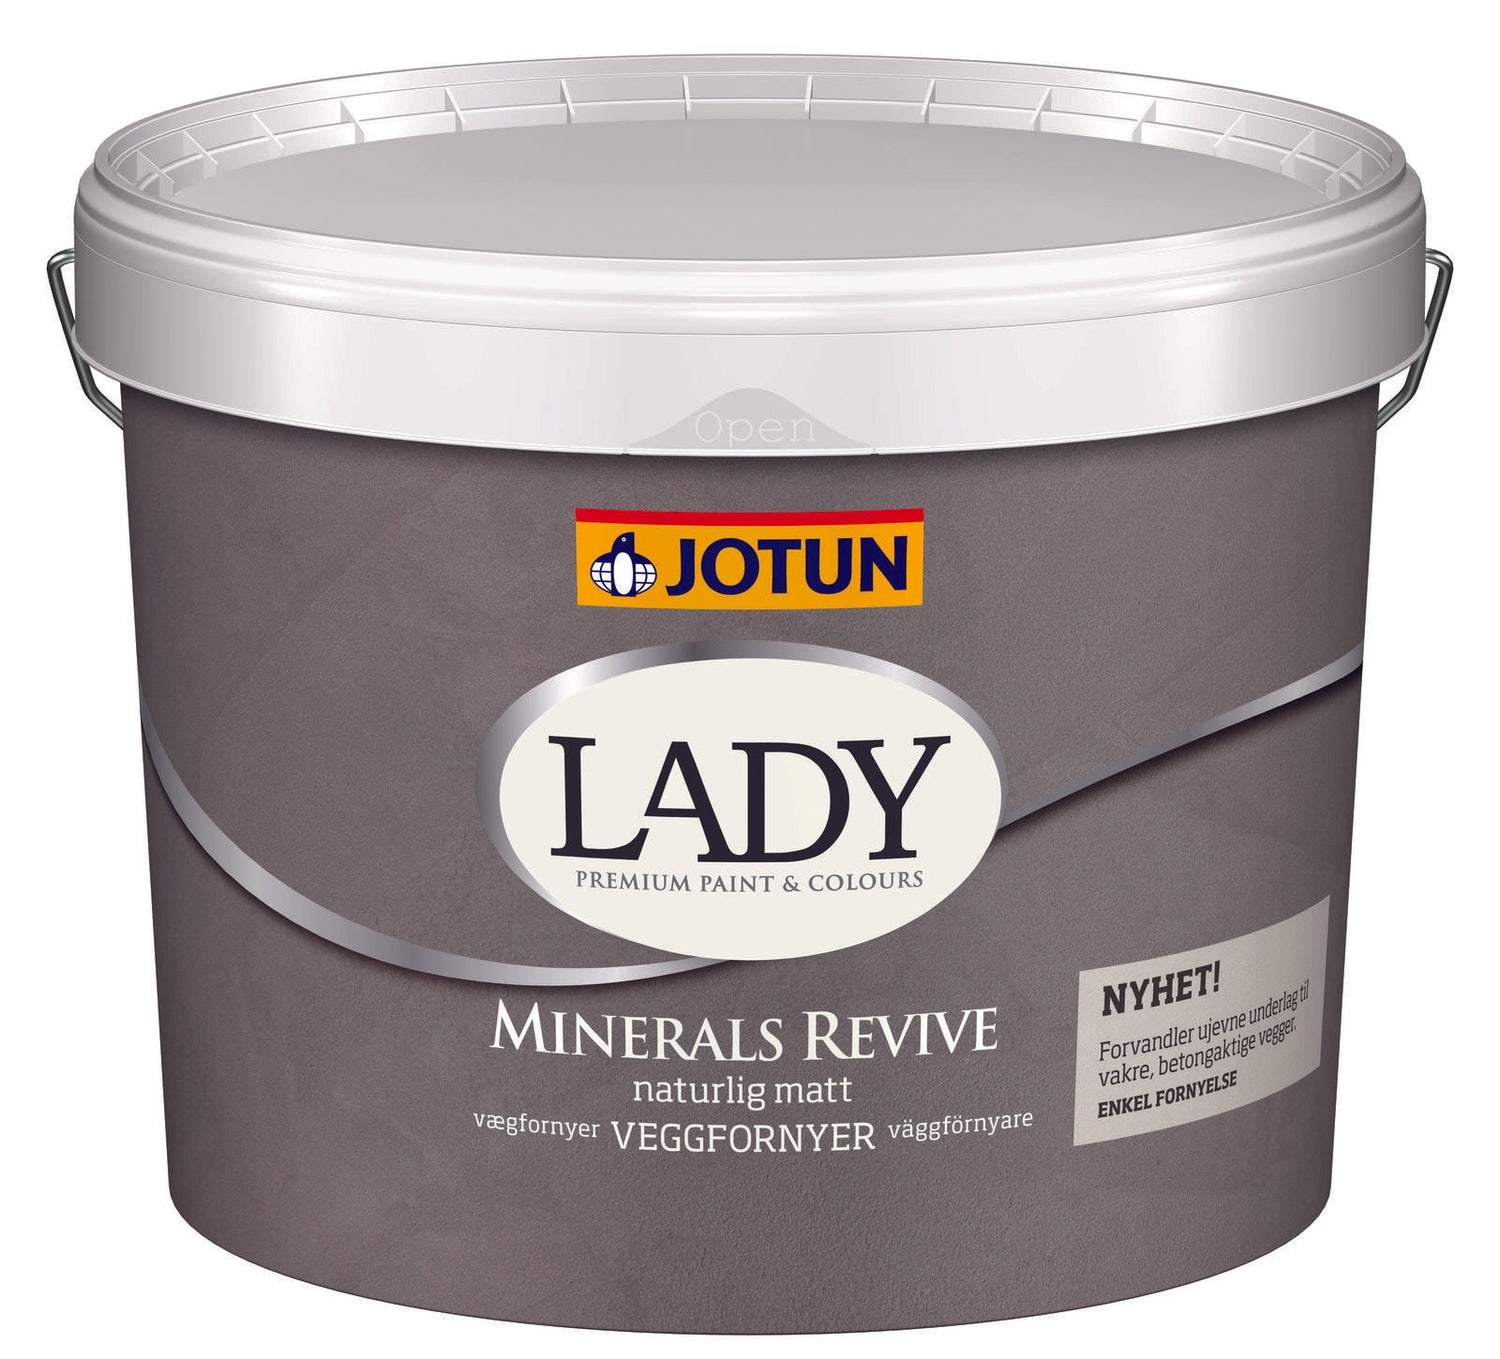 2040 LYS GRANIT - Jotun Lady Minerals Revive - Malprivat.dk